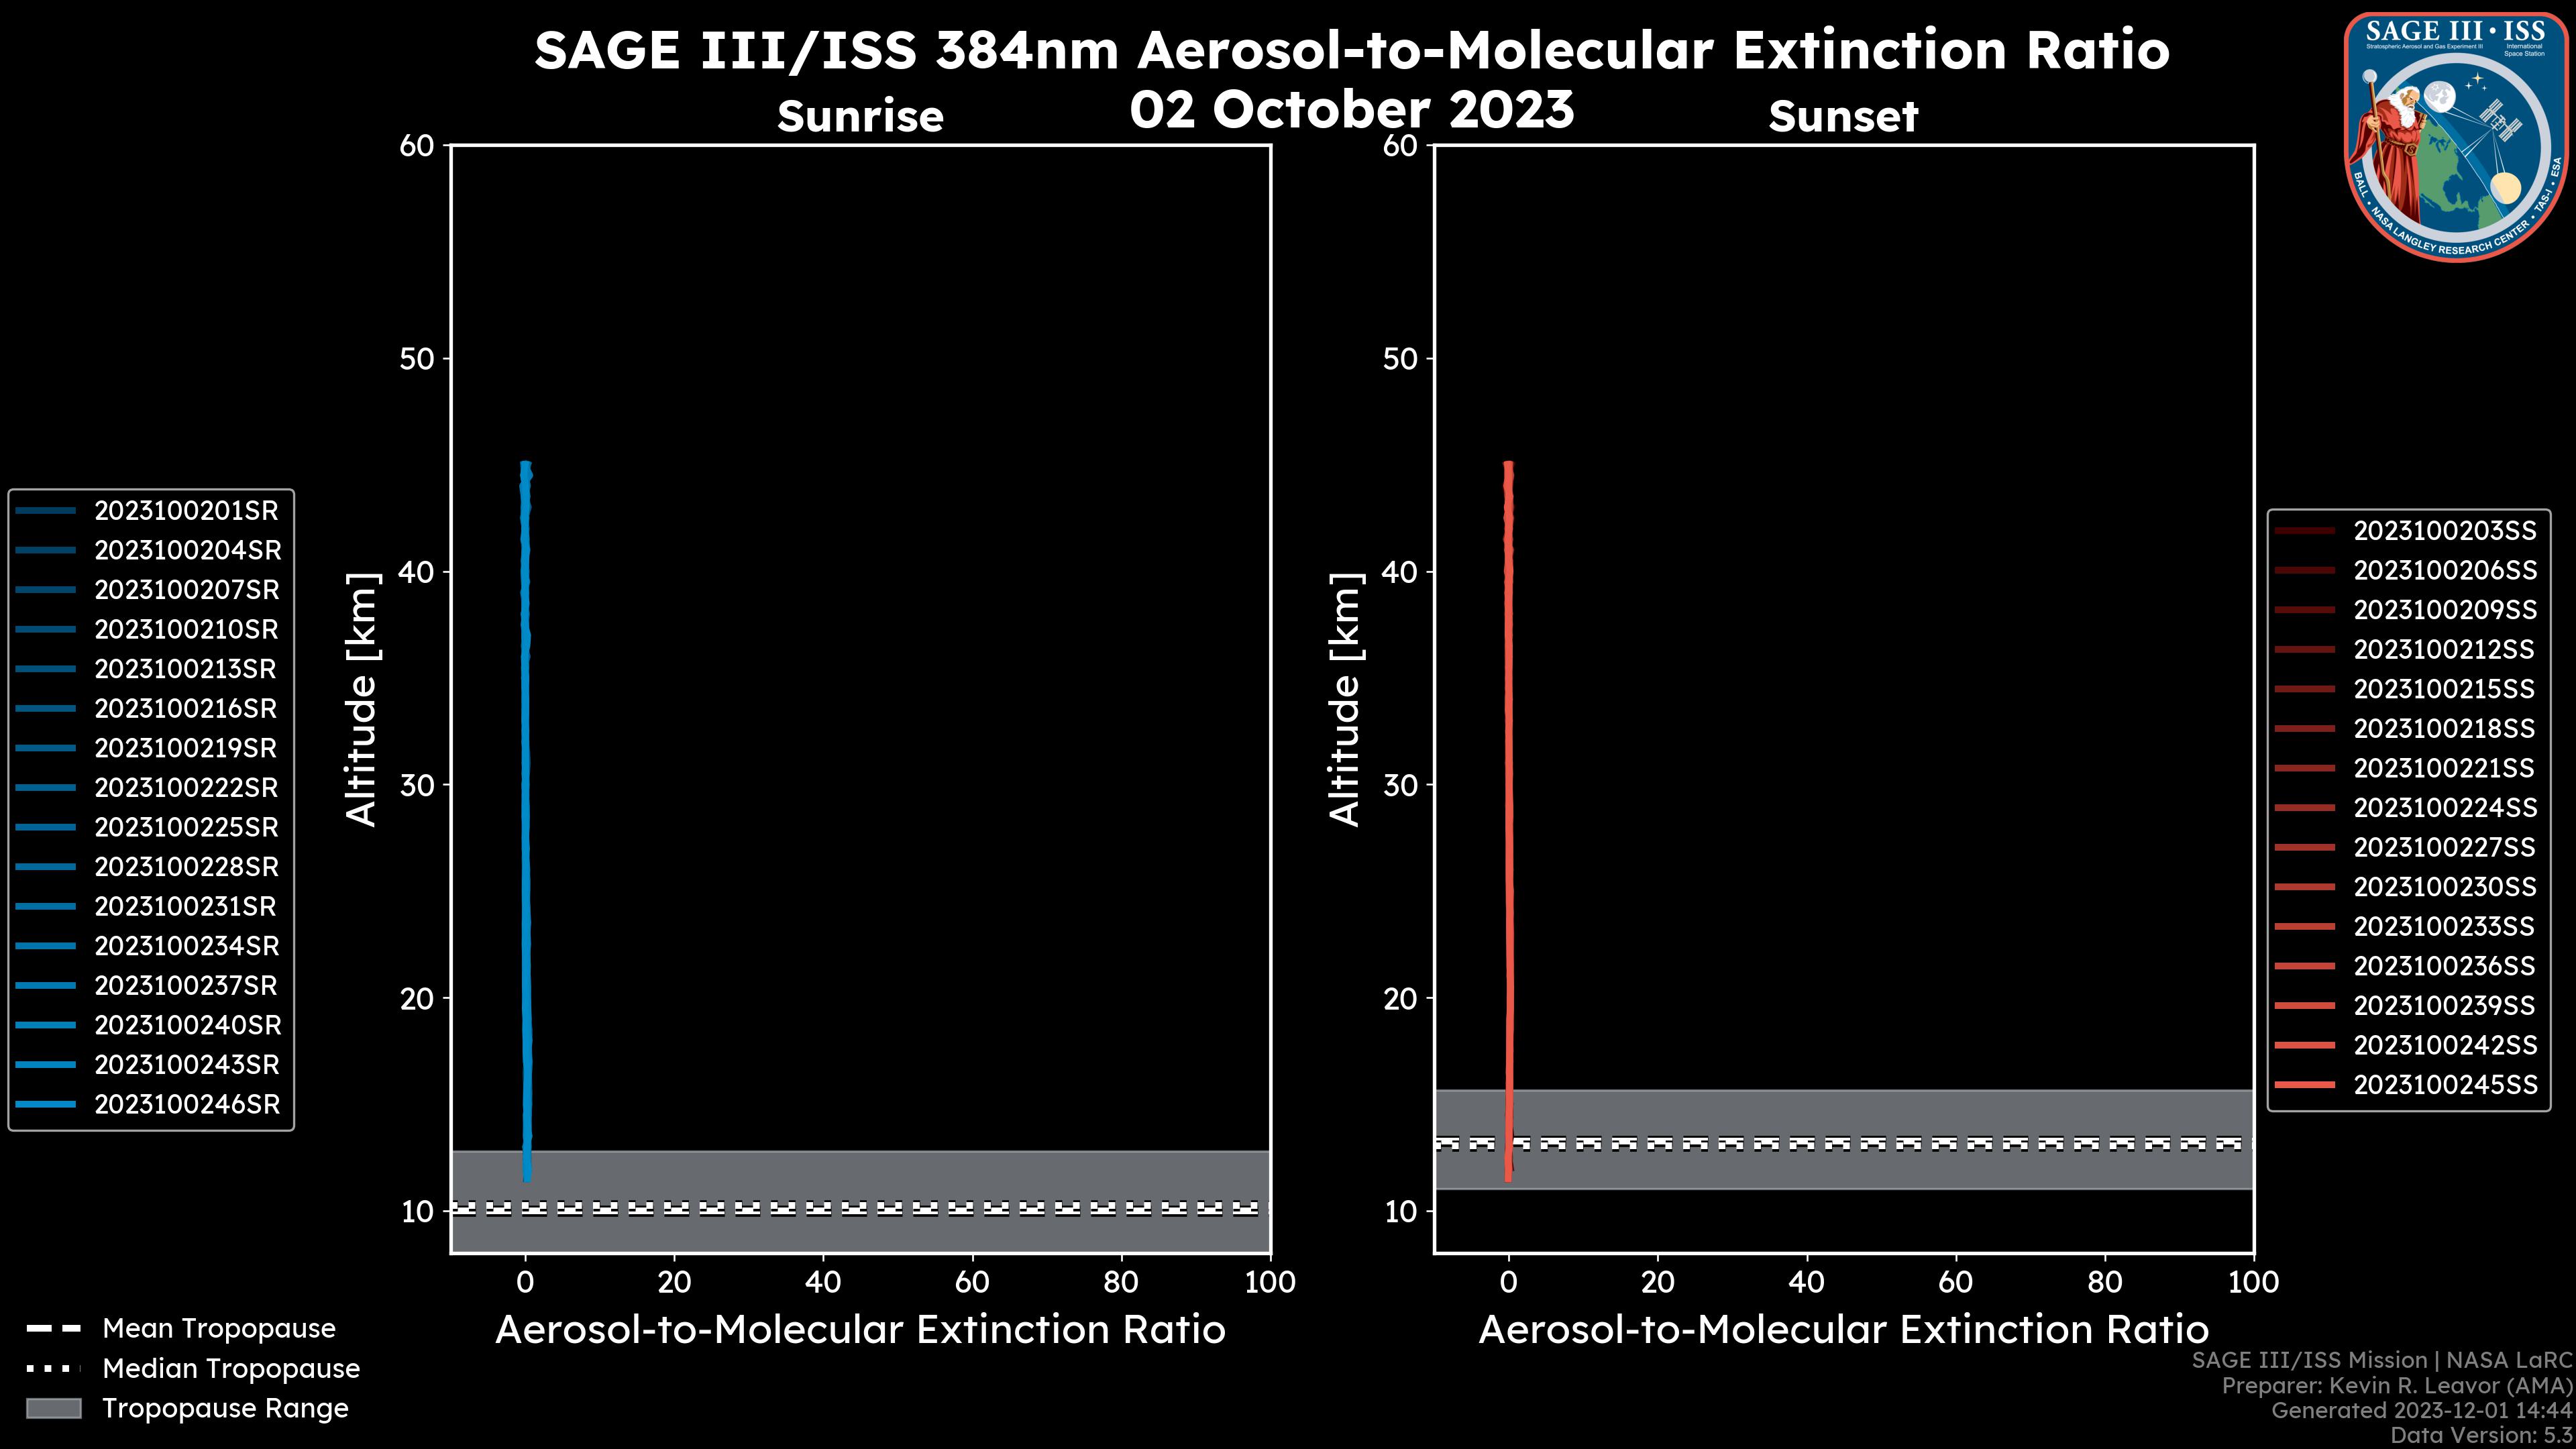 384nm Aerosol-to-Molecular Extinction Ratio